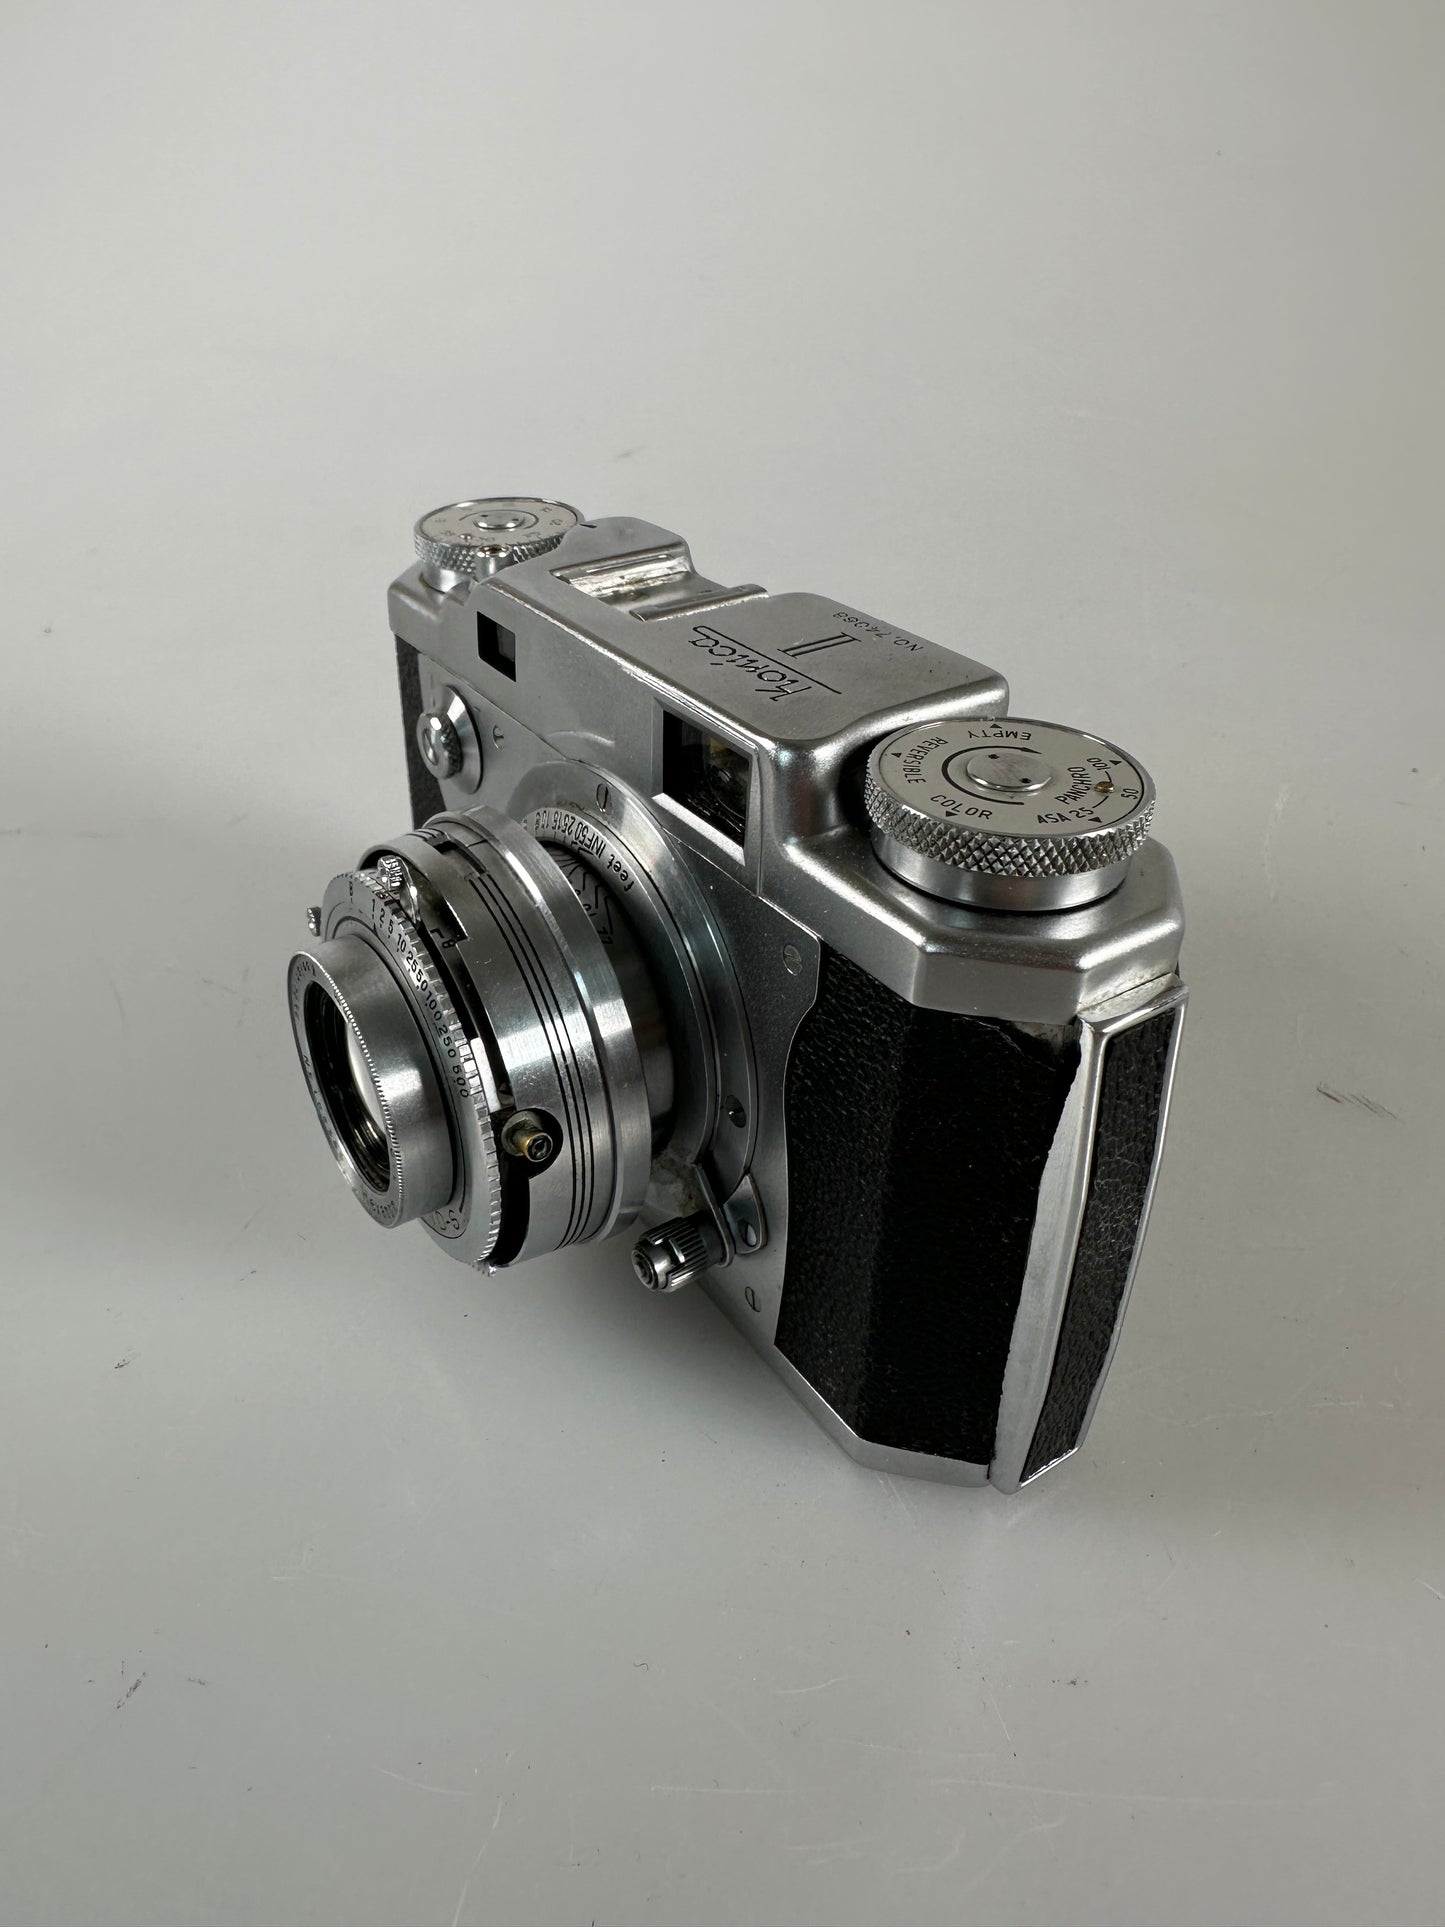 Konica II Rangefinder Camera Hexanon 5cm 50mm f2.8